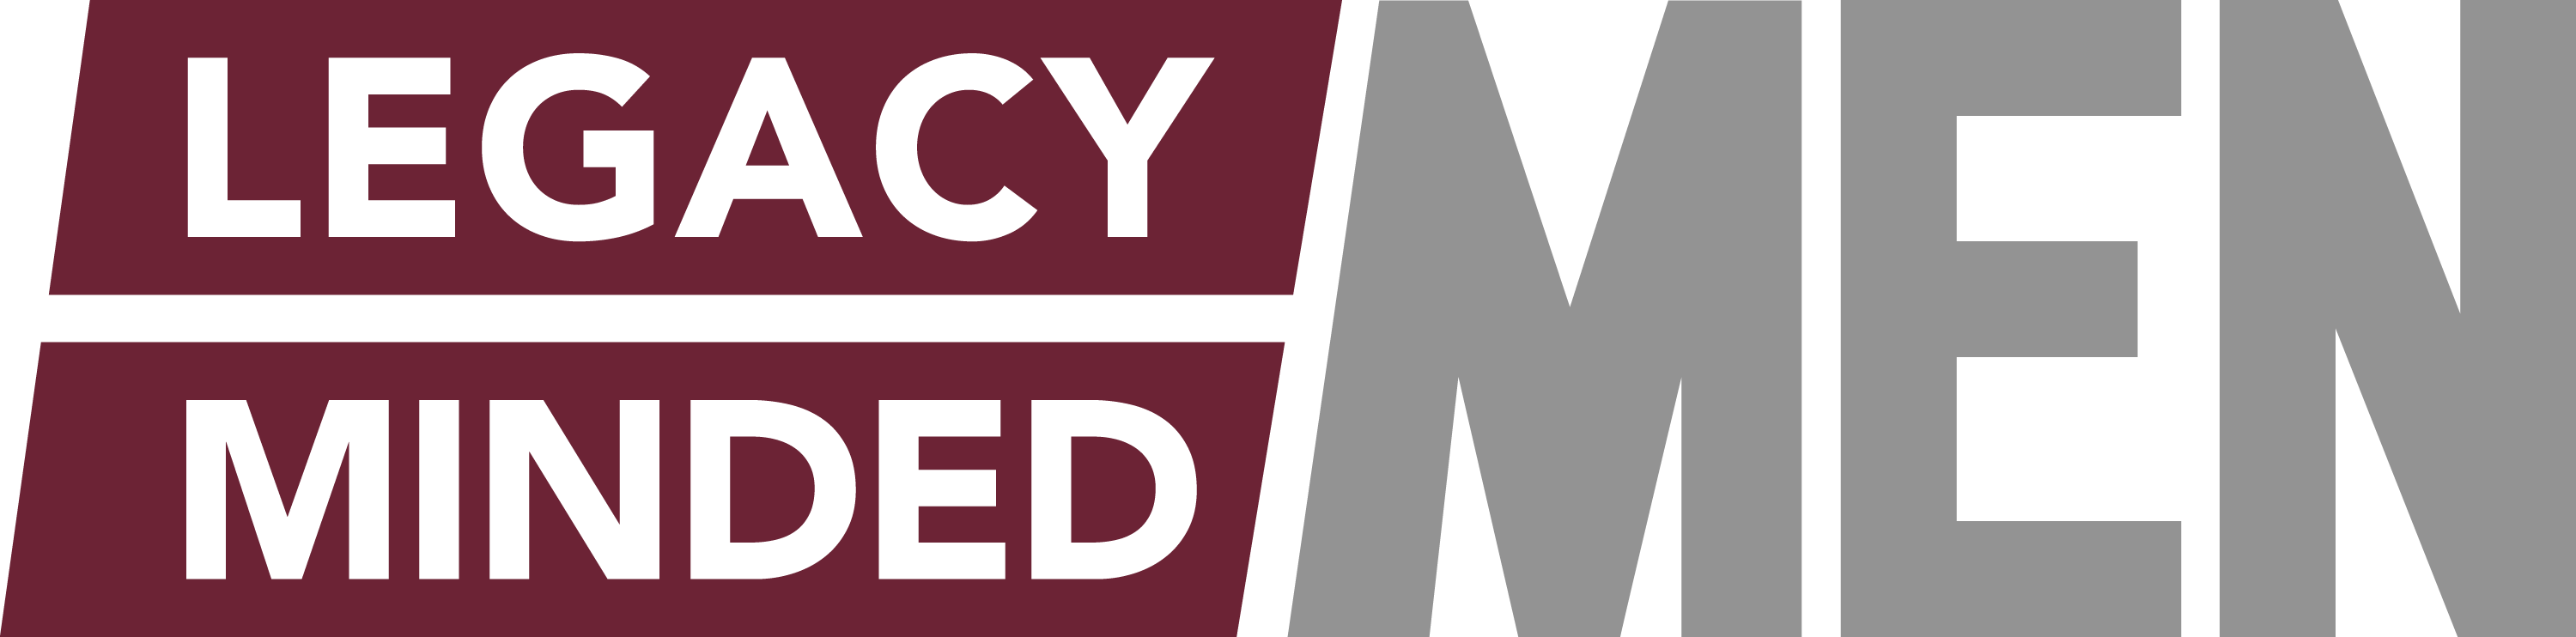 Legacy Minded Men Logo & Link